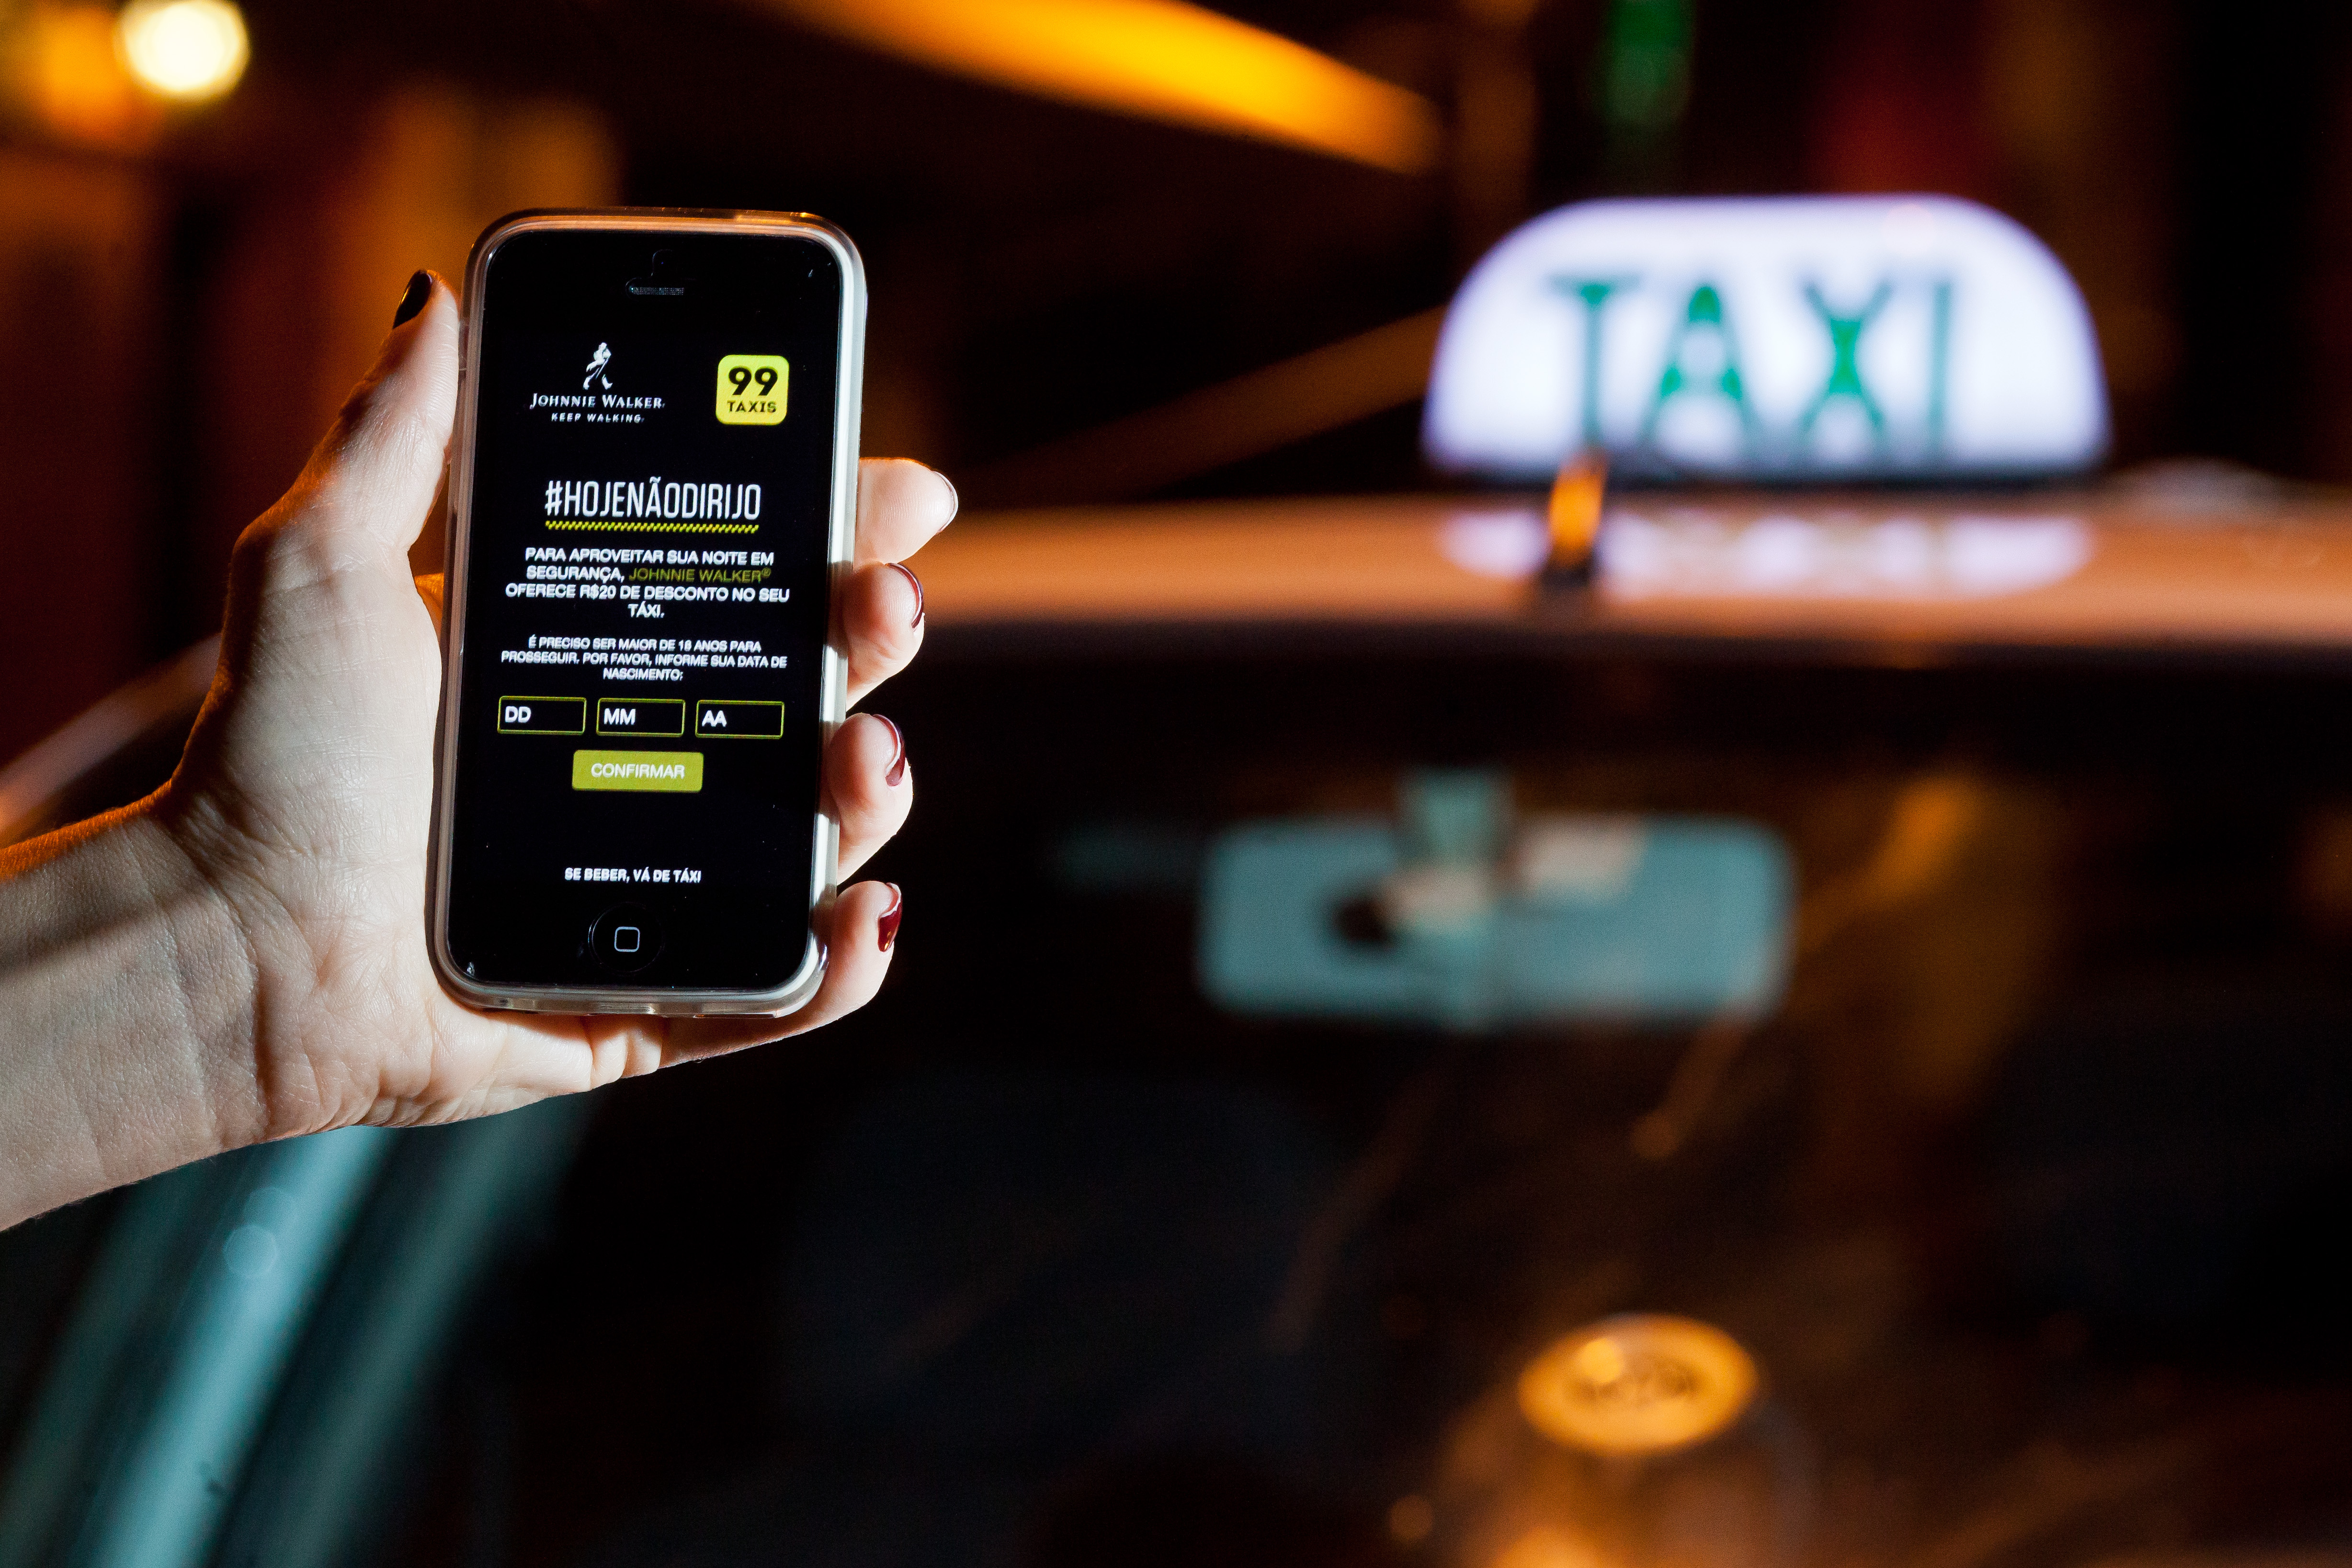 Viagens: #HojeNãoDirijo: campanha paga corridas de táxi de até R$ 30 nas noites de sexta e sábado em SP